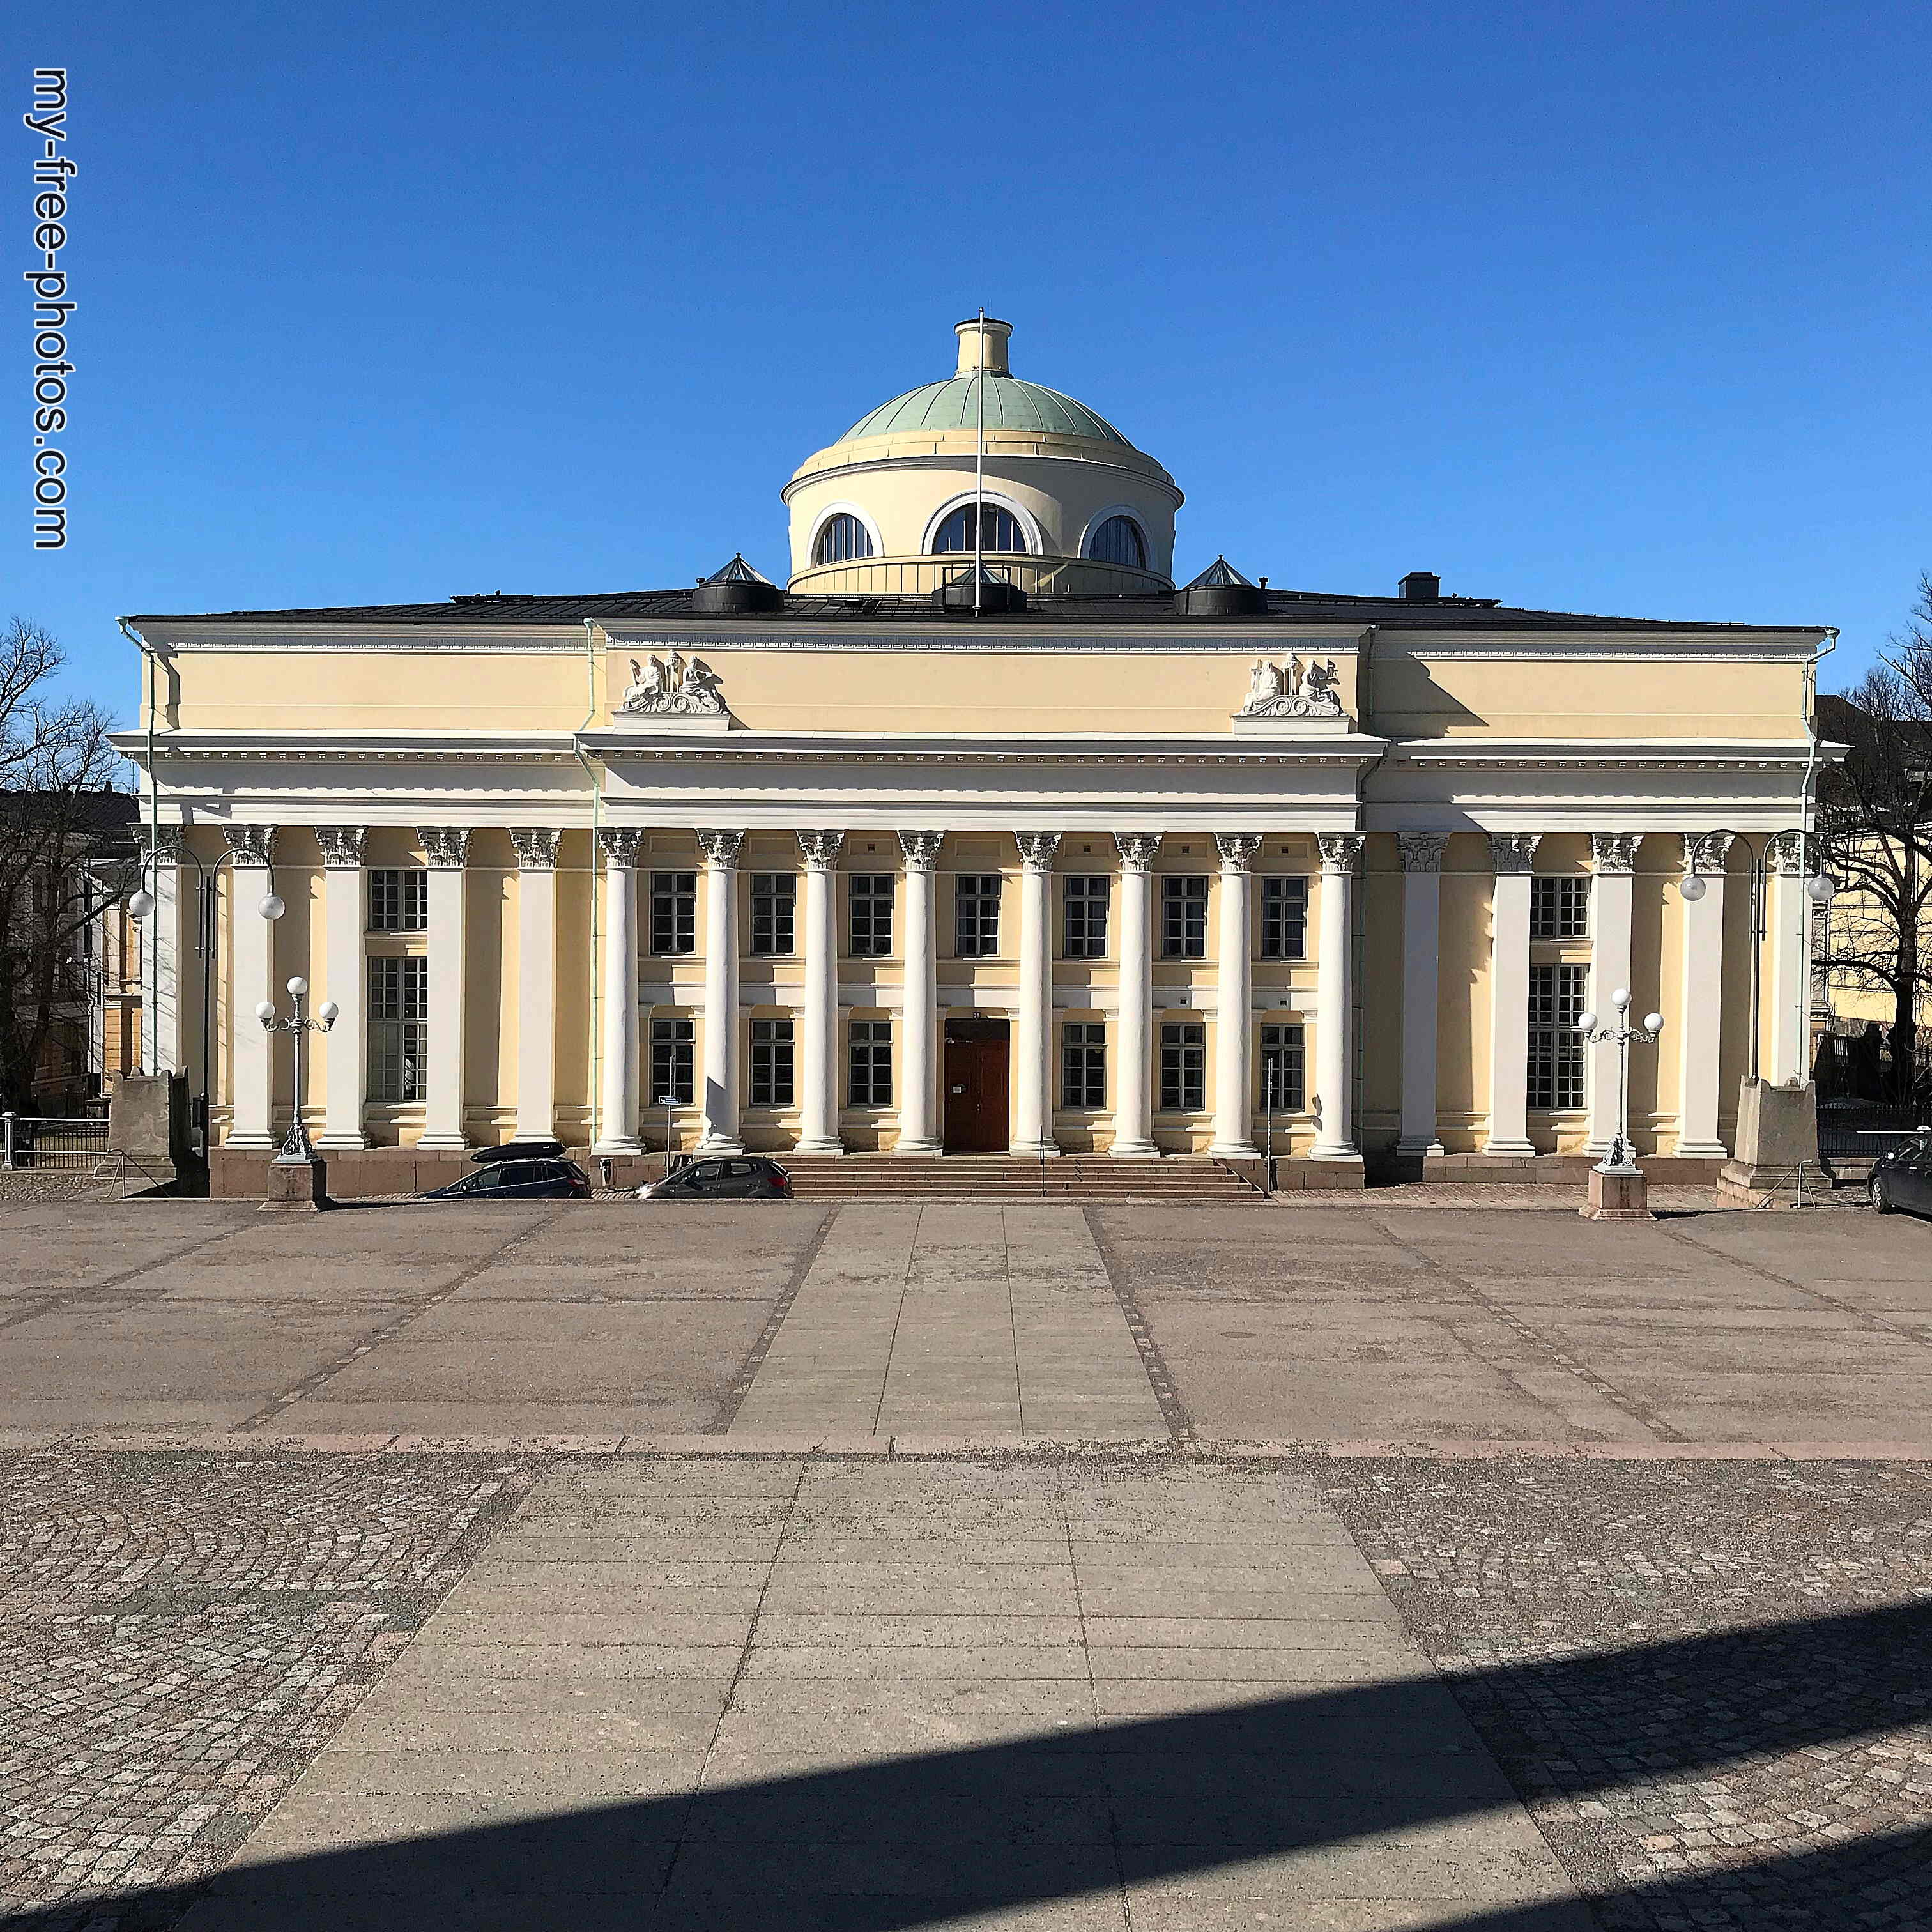 Senate Square Helsinki 